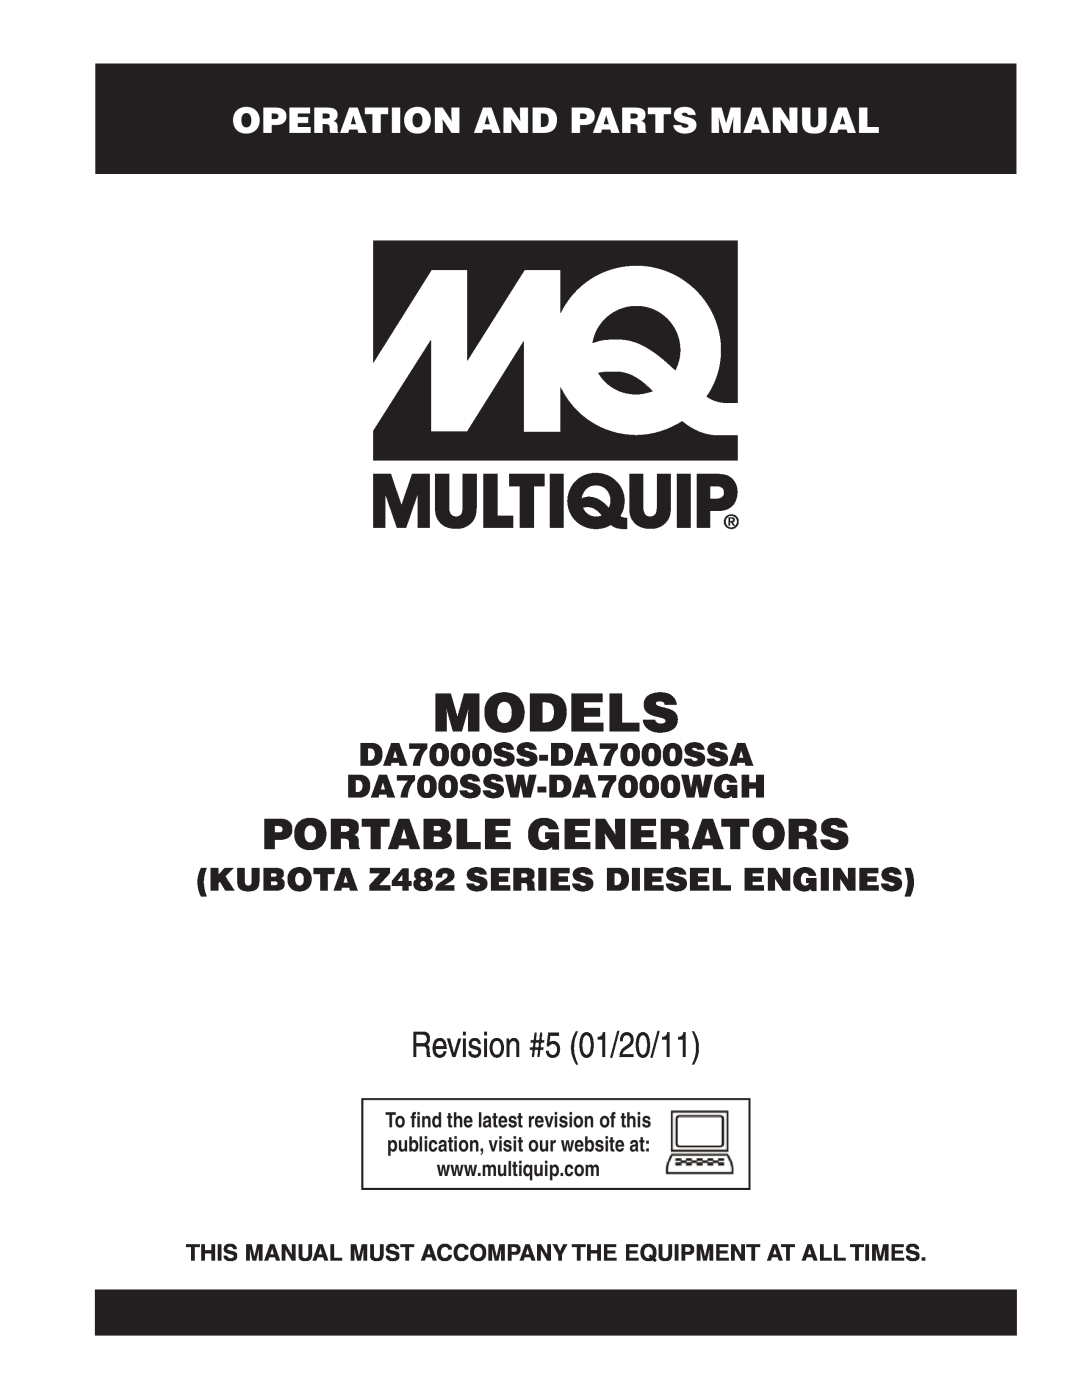 Multiquip manual Operation And Parts Manual, DA7000SS-DA7000SSA DA700SSW-DA7000WGH, KUBOTA Z482 SERIES DIESEL ENGINES 